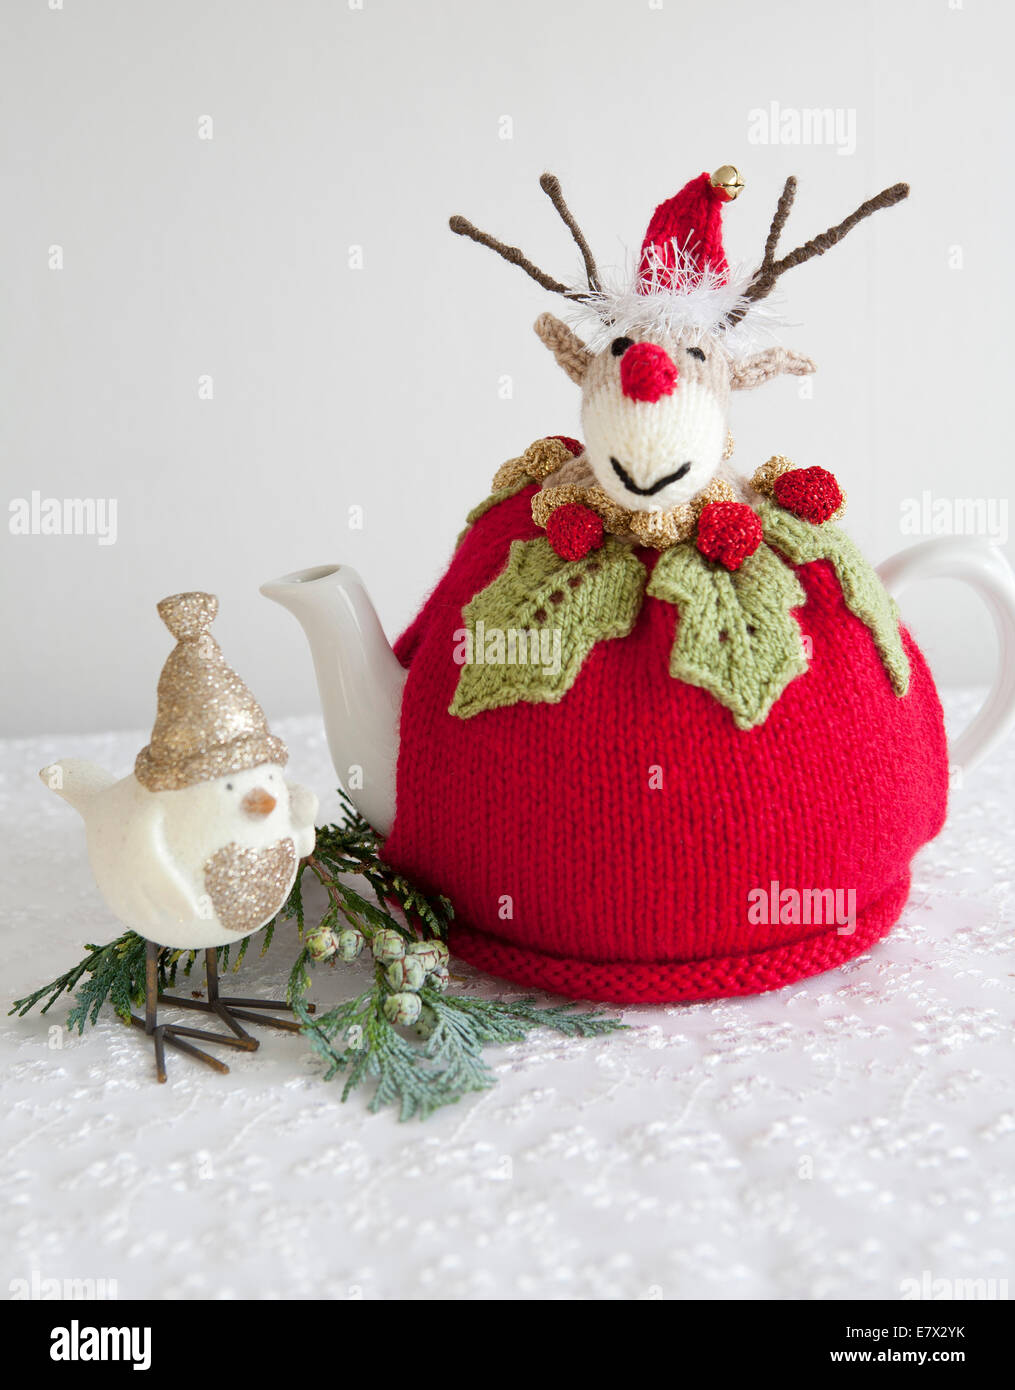 Novità handknitted tè di Natale accogliente nella forma di Rudolph il naso rosso renne Foto Stock